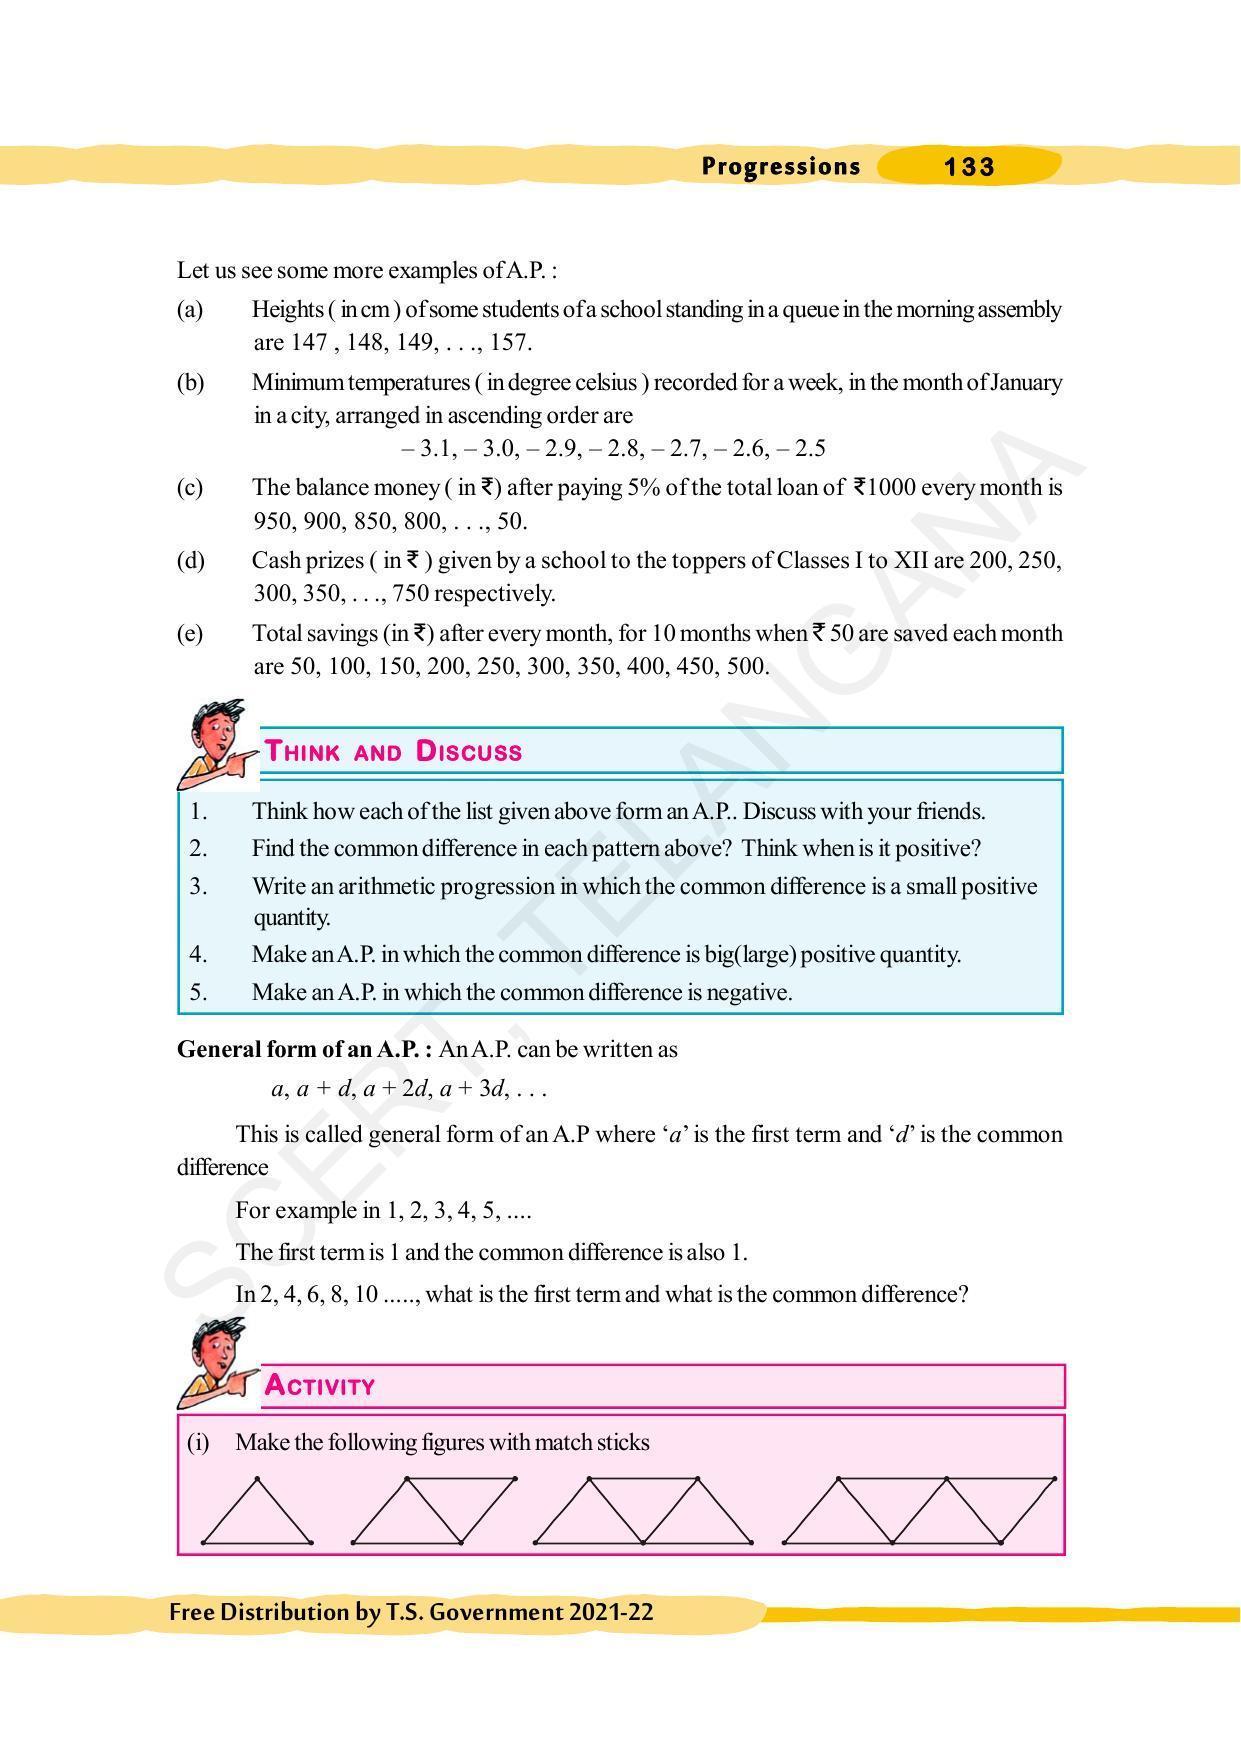 TS SCERT Class 10 Maths (English Medium) Text Book - Page 143